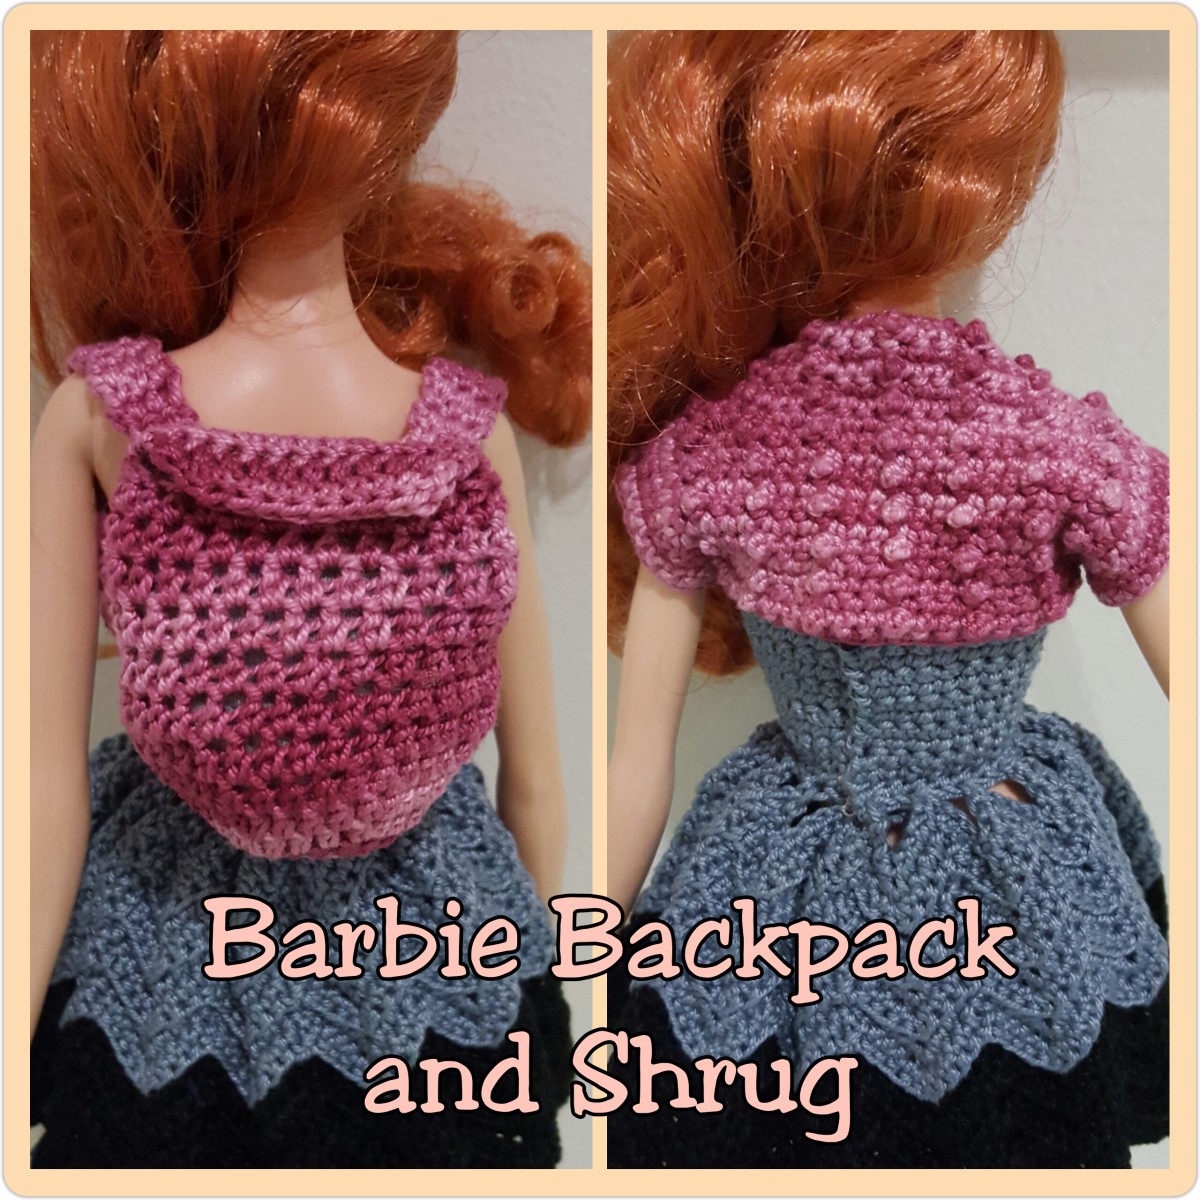 Barbie backpack and shrug